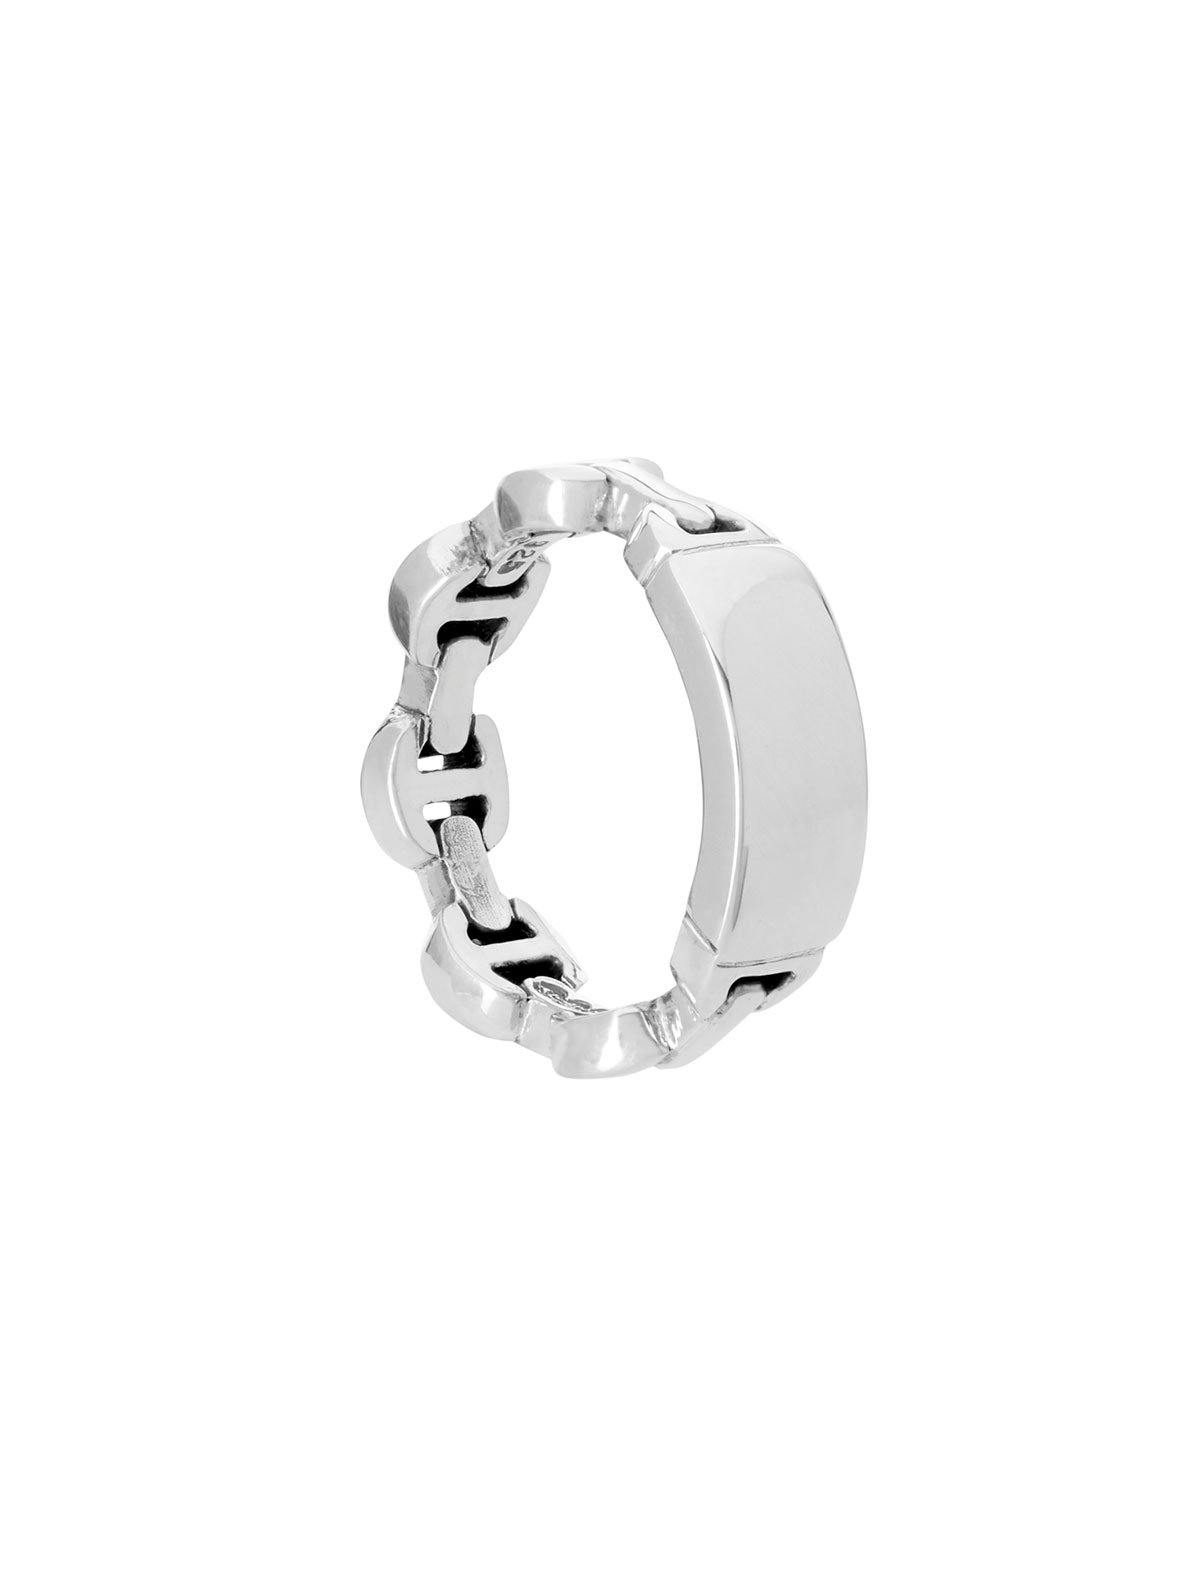 HOORSENBUHS ® Dame Tri-Link Monogram Ring | Multi-label Fashion